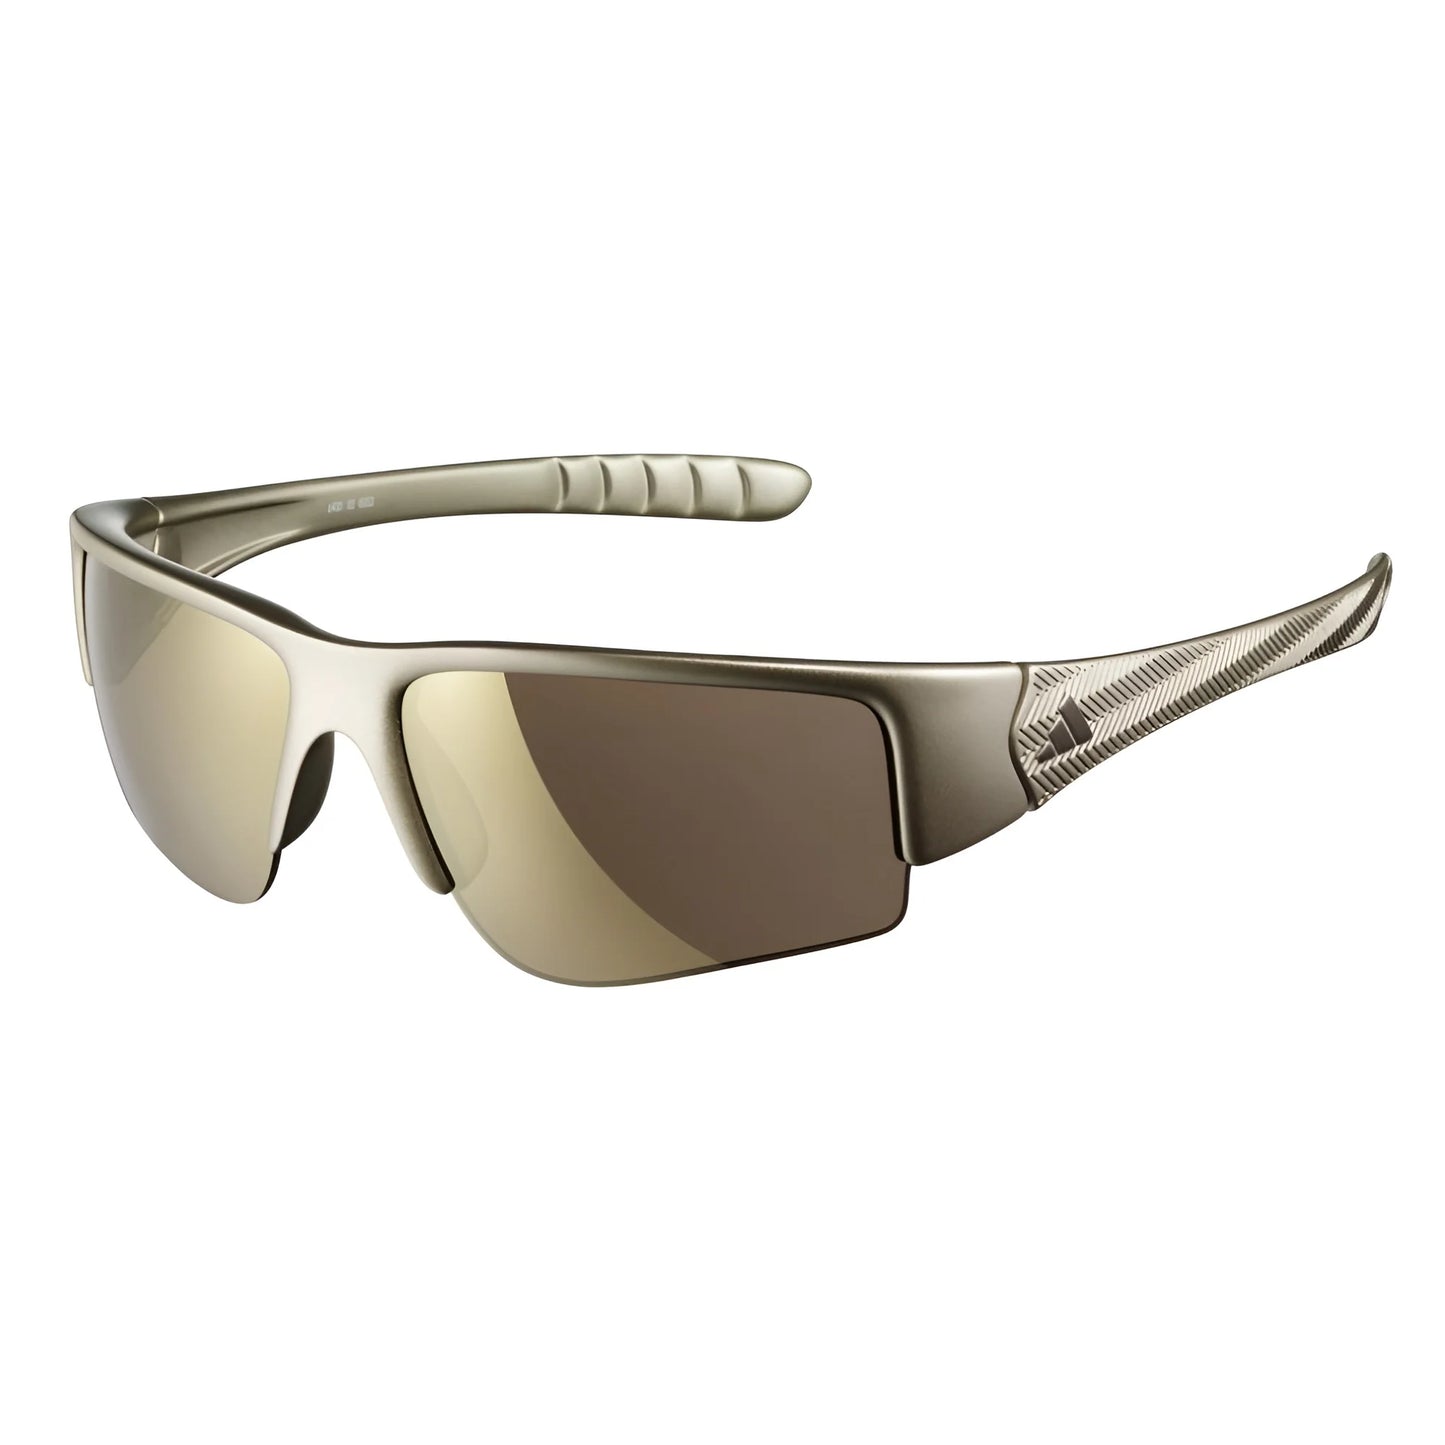 Adidas MACTELO II A400 Sunglasses